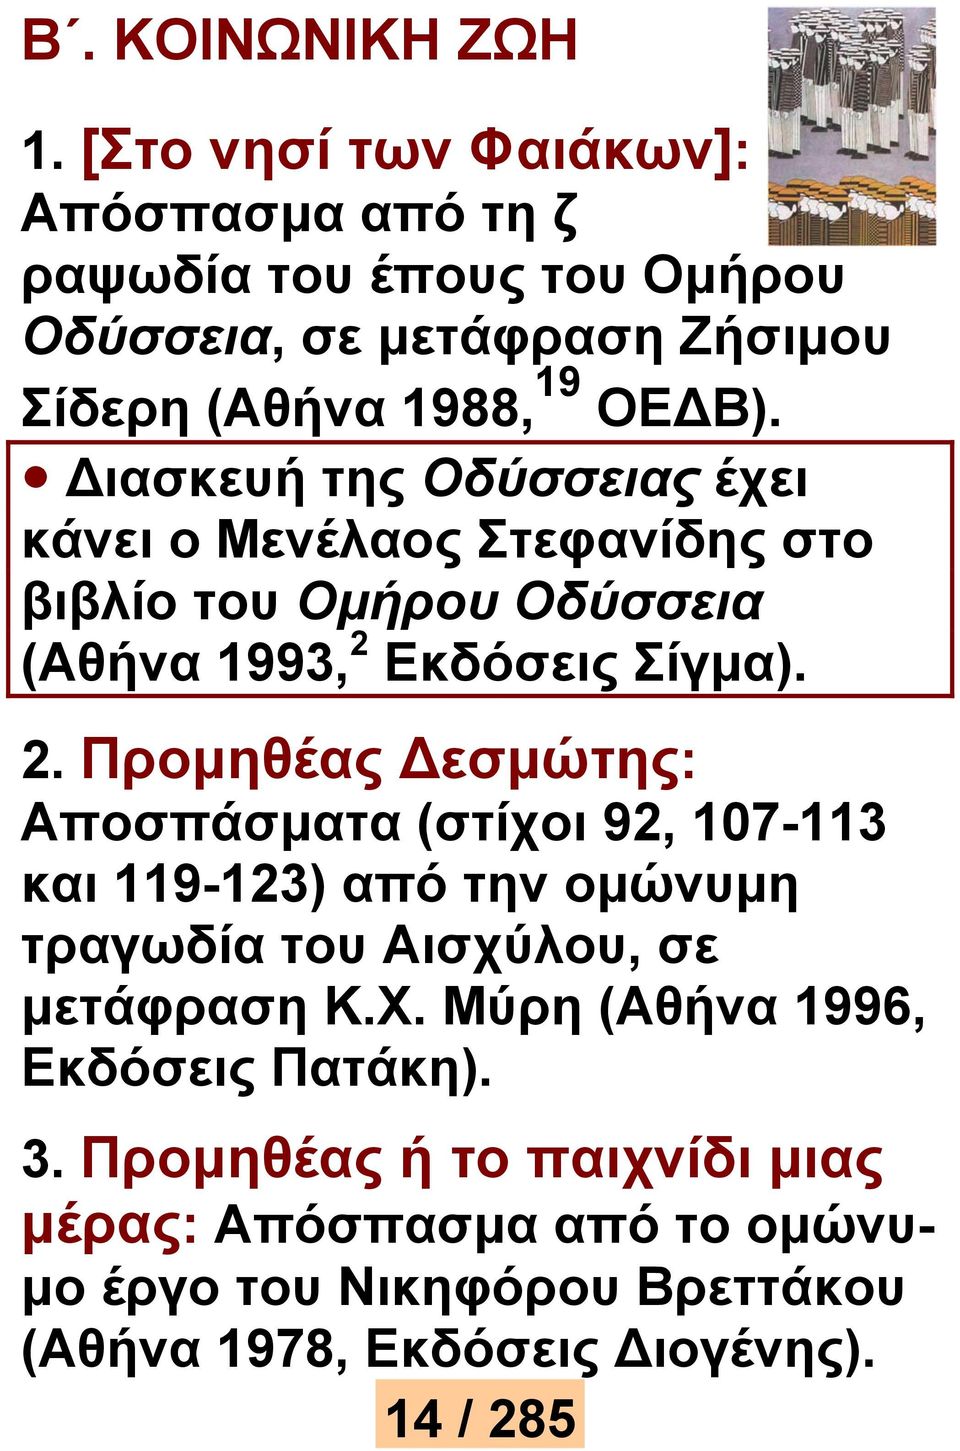 ιασκευή της Οδύσσειας έχει κάνει ο Μενέλαος Στεφανίδης στο βιβλίο του Ομήρου Οδύσσεια (Αθήνα 1993, 2 